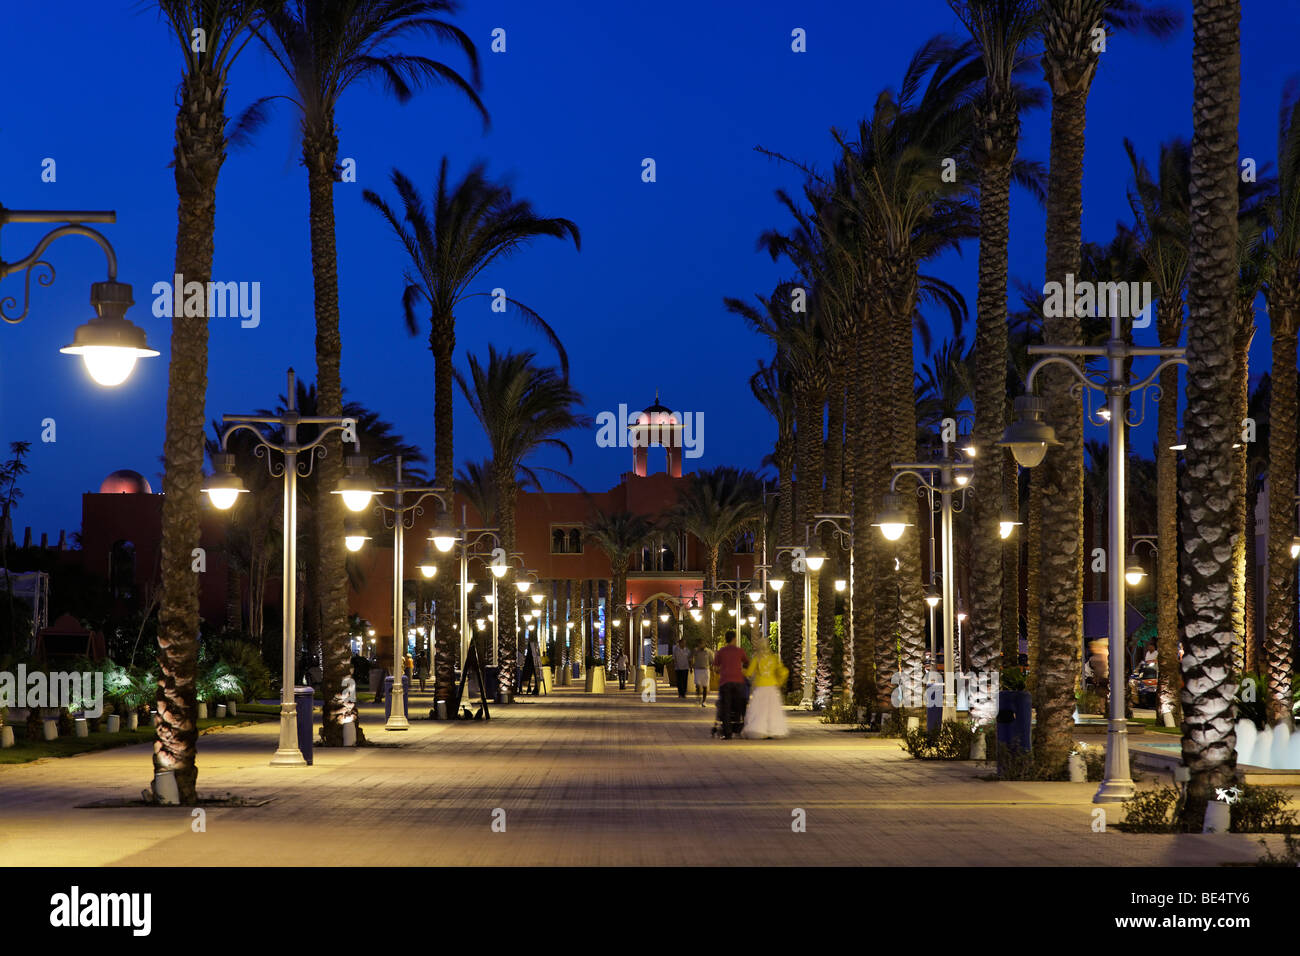 Flaniermeile für Einkaufs- und Flaniermeile, Dattelpalmen, Abend, beleuchtete Straße Lampen, Yussuf Afifi Road, Hurghada, Motorradfahrt Stockfoto